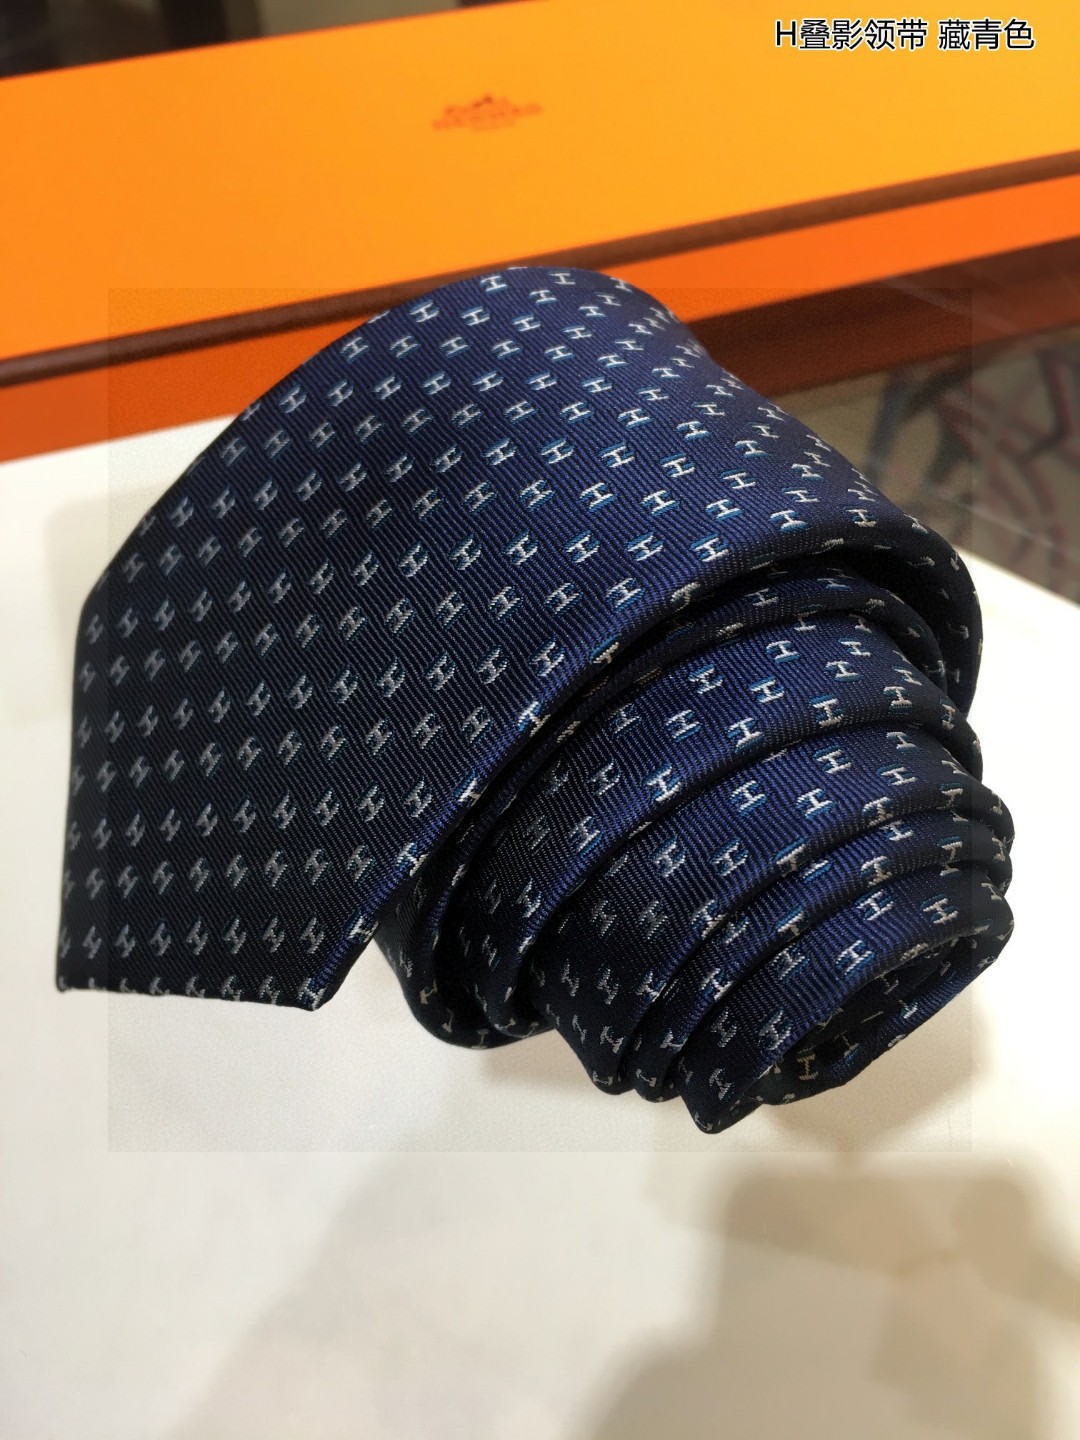 特价男士新款领带系列H叠影领带稀有H家每年都有一千条不同印花的领带面世从最初的多以几何图案表现骑术活动为